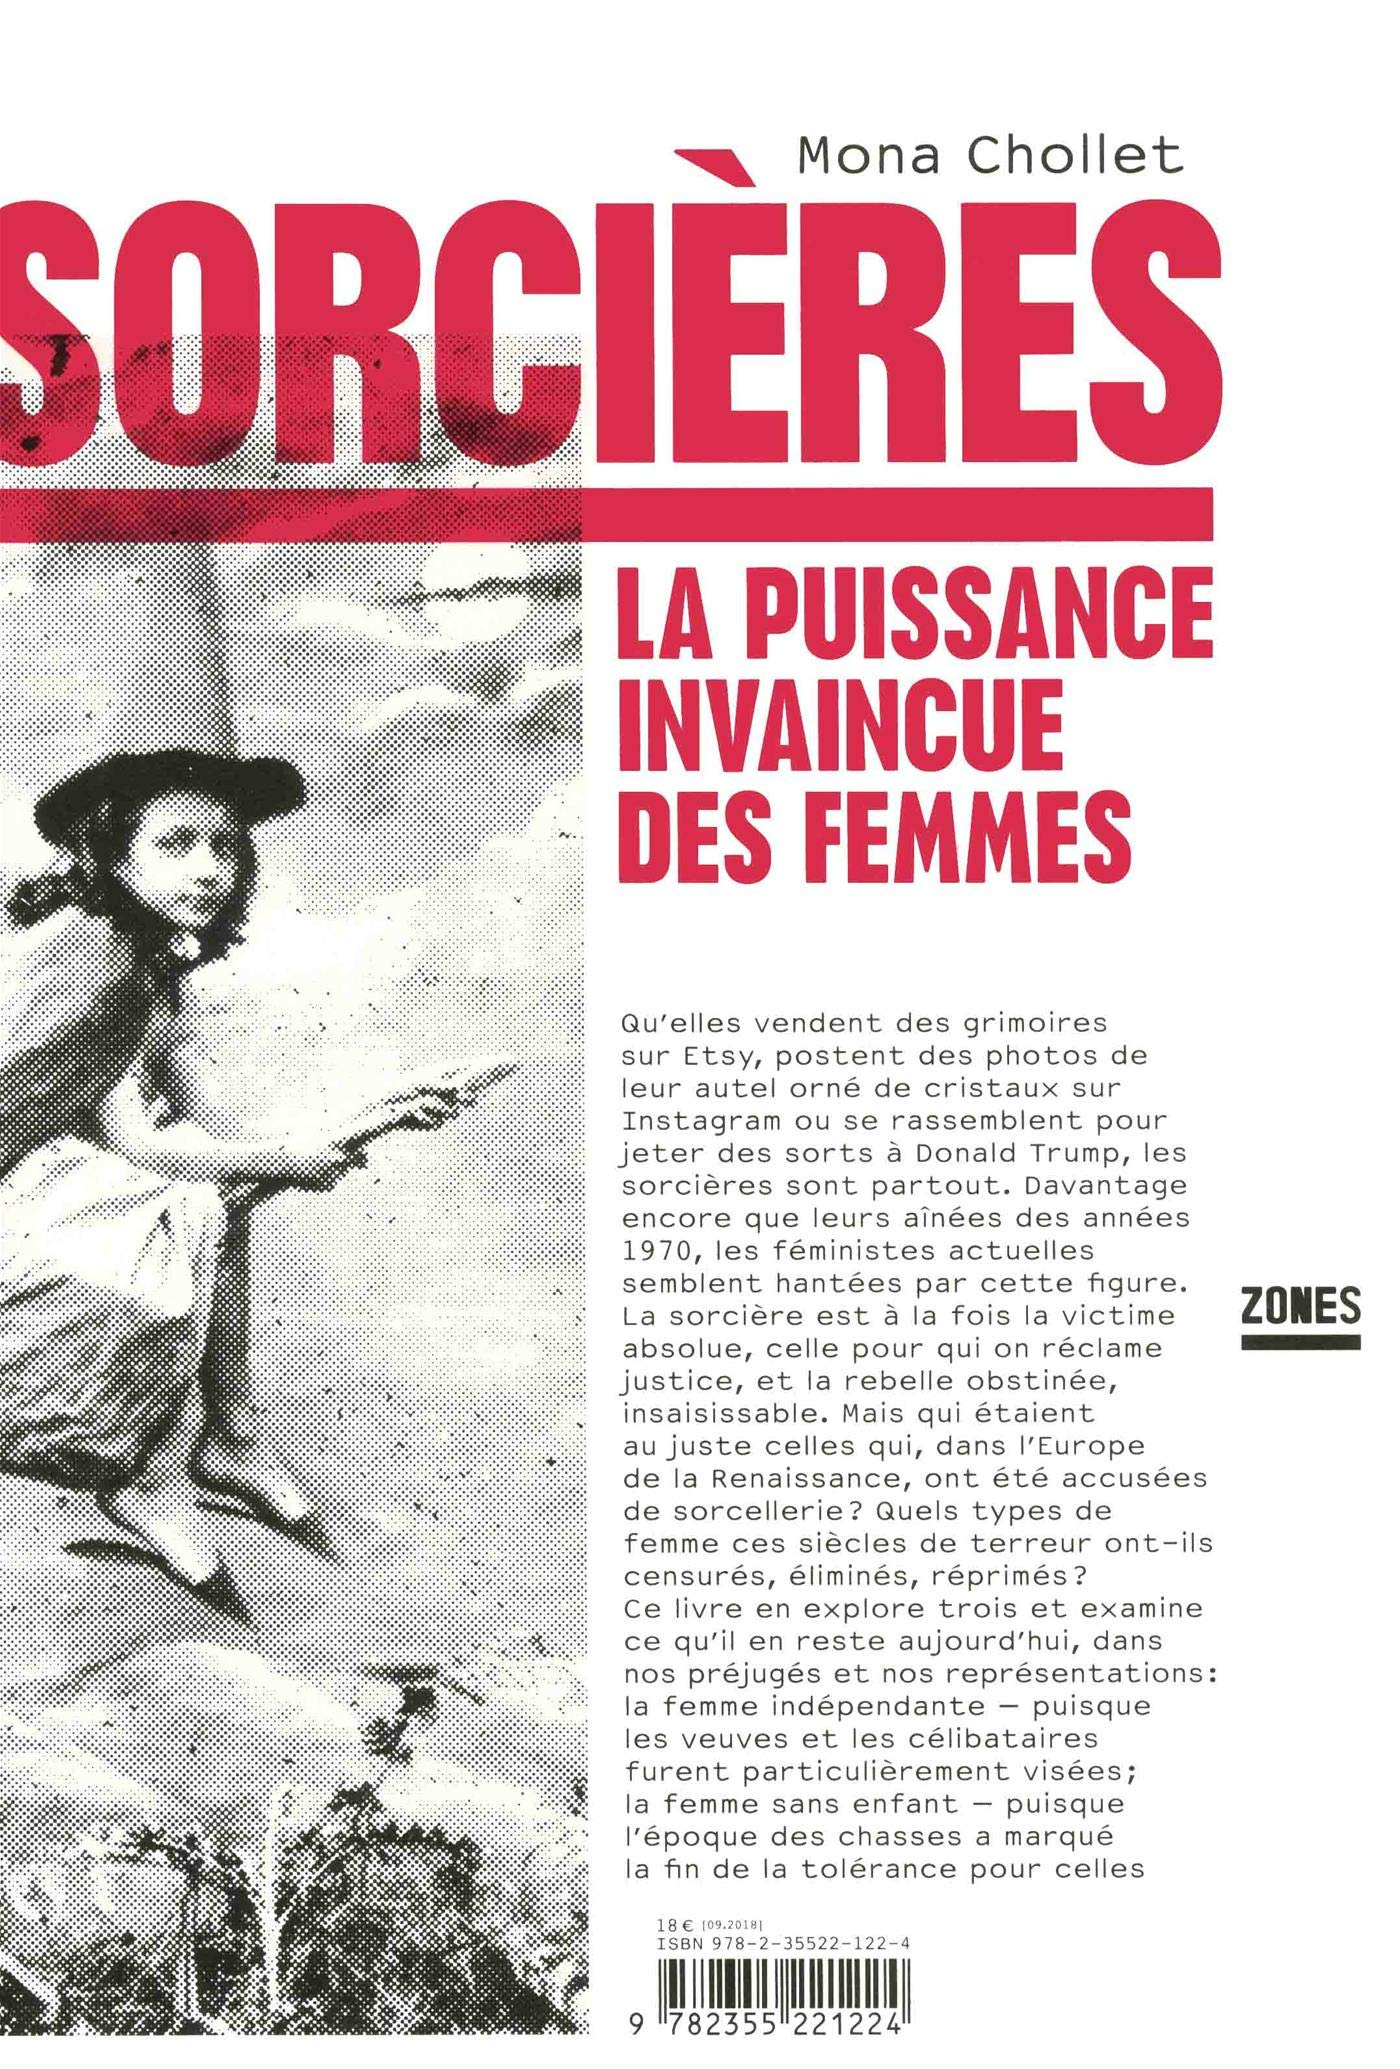 Sorcières - Mona Chollet - theatre-contemporain.net